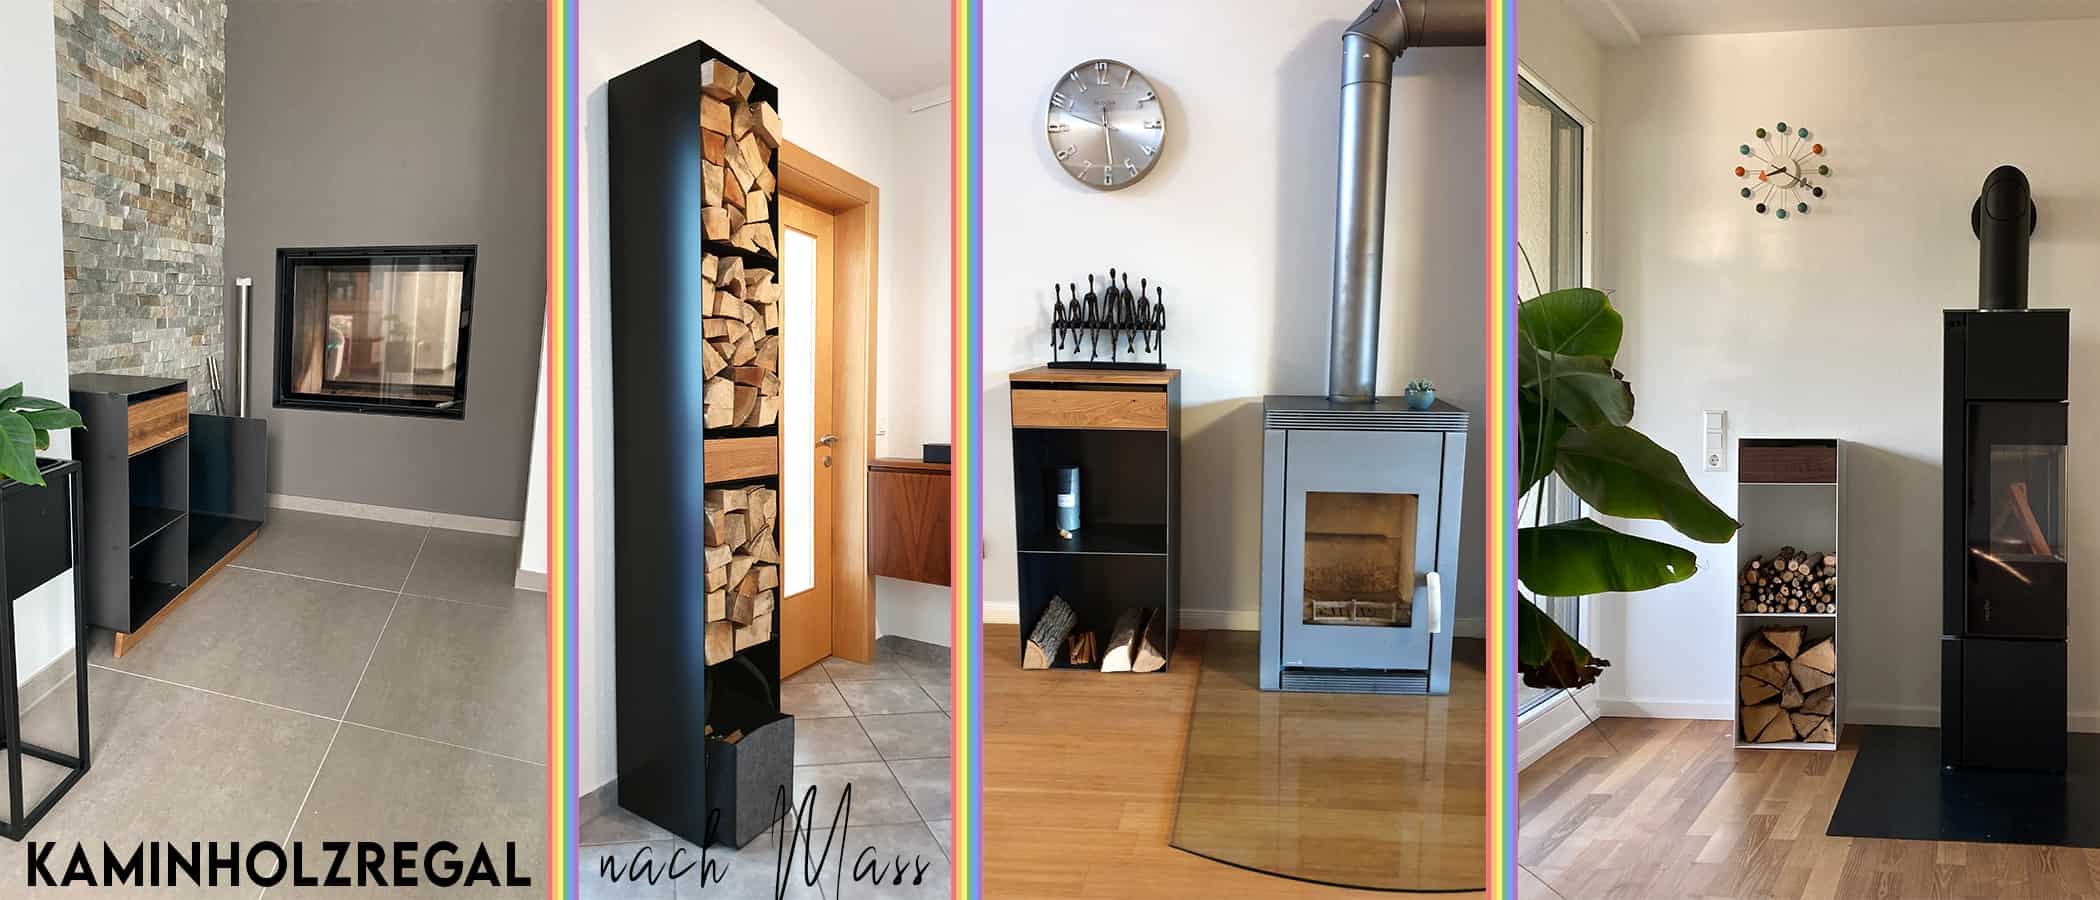 kaminholzregal-nach-mass-innen-metall-rueckwand-bauen-modern-wohnzimmer-design-holz-stahl-wand-edelstahl-schwarz-anthrazit-weiss-mit-schublade-individuell-stahlzart